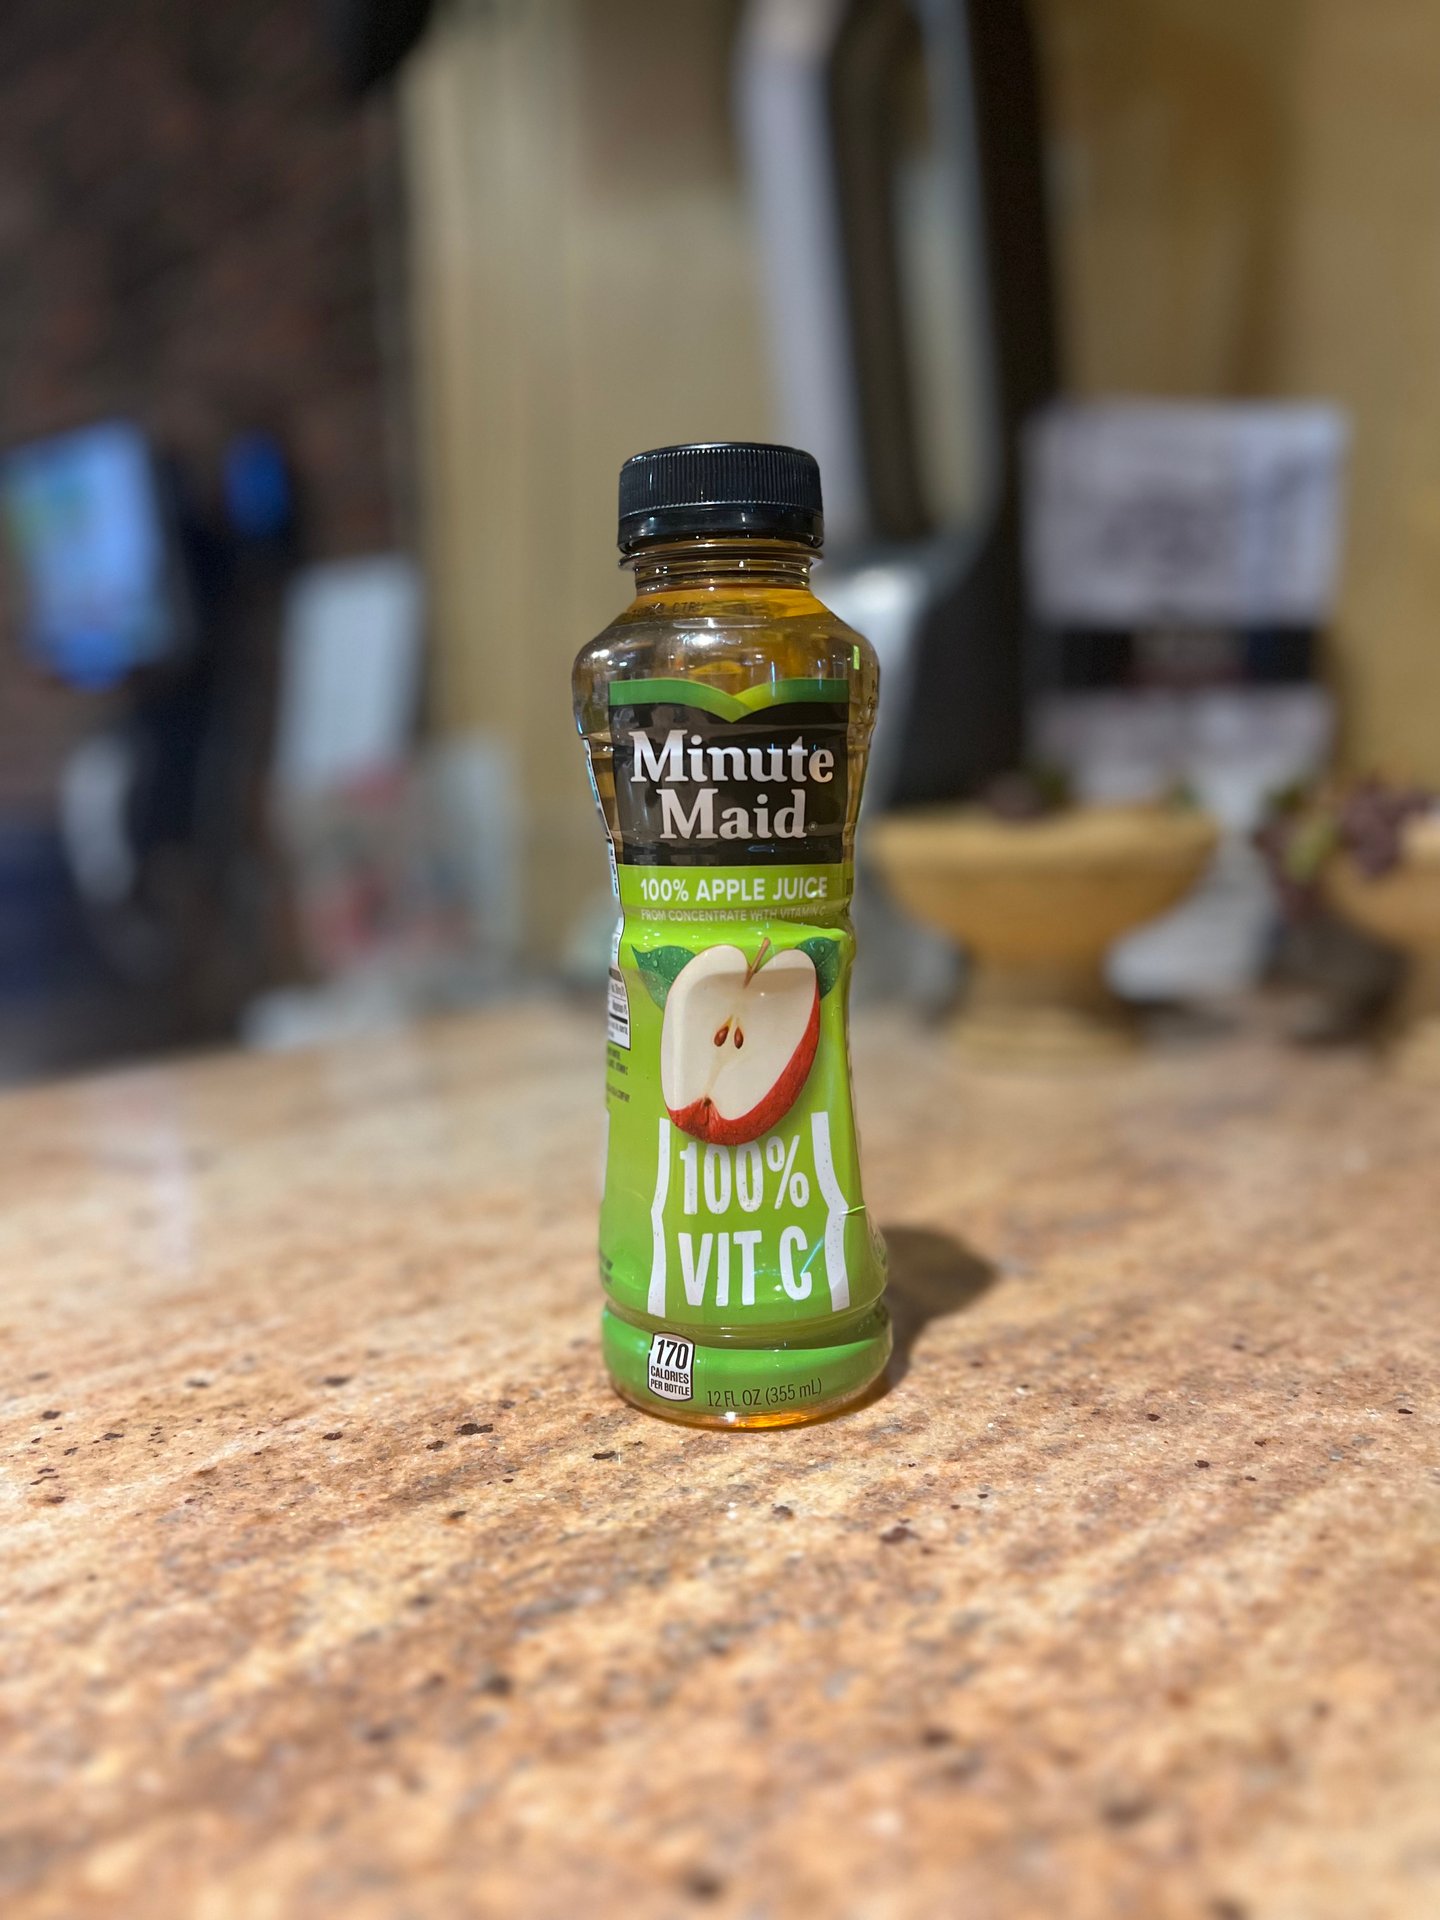 Minute Maid Apple Juice Bottle, 12 fl oz, Apple